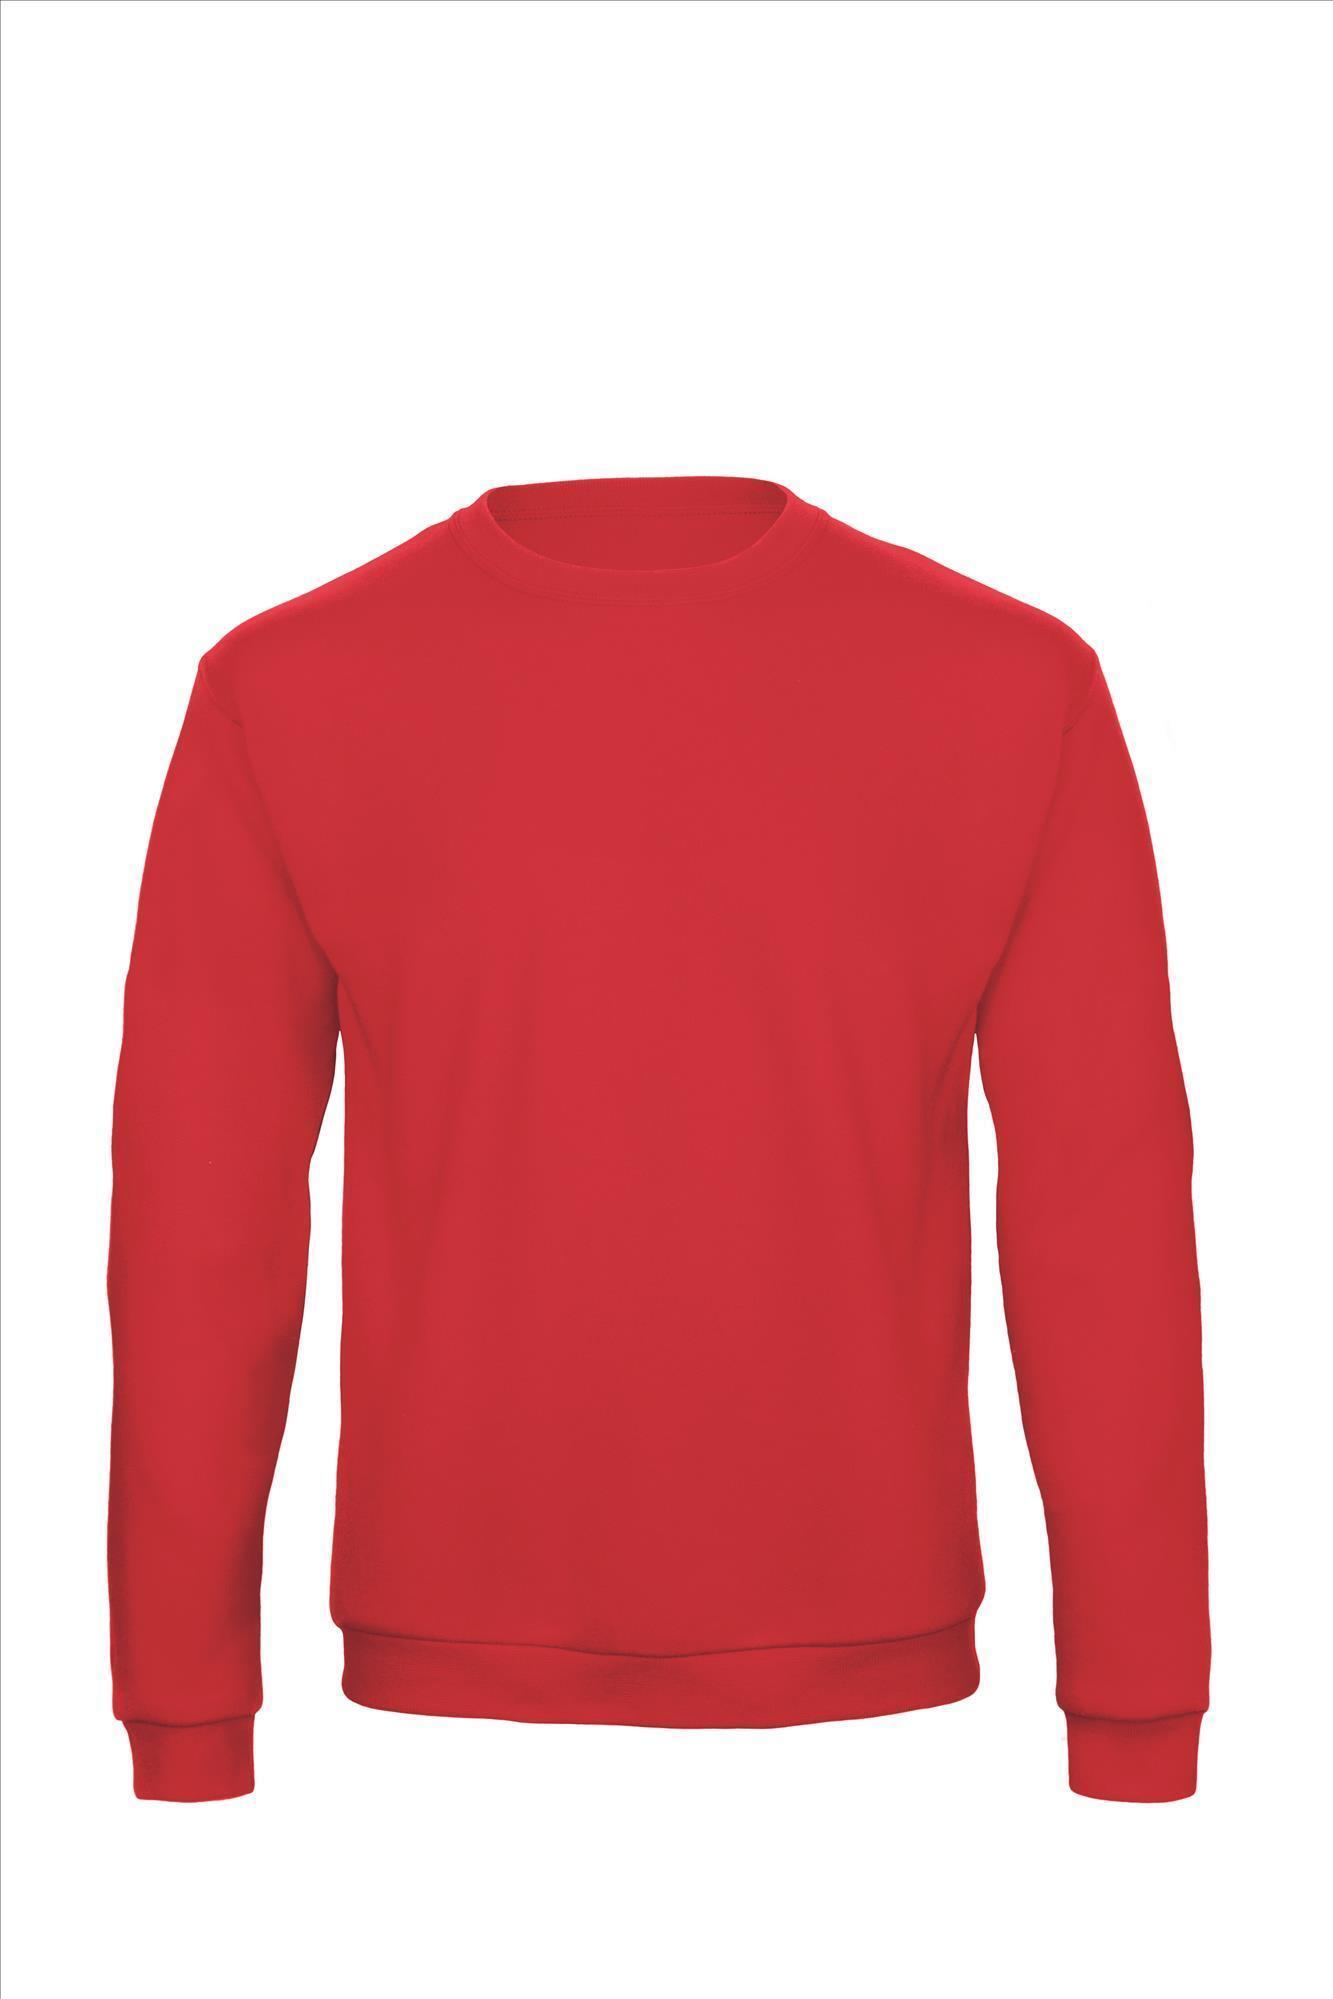 Sweater voor mannen budget rood